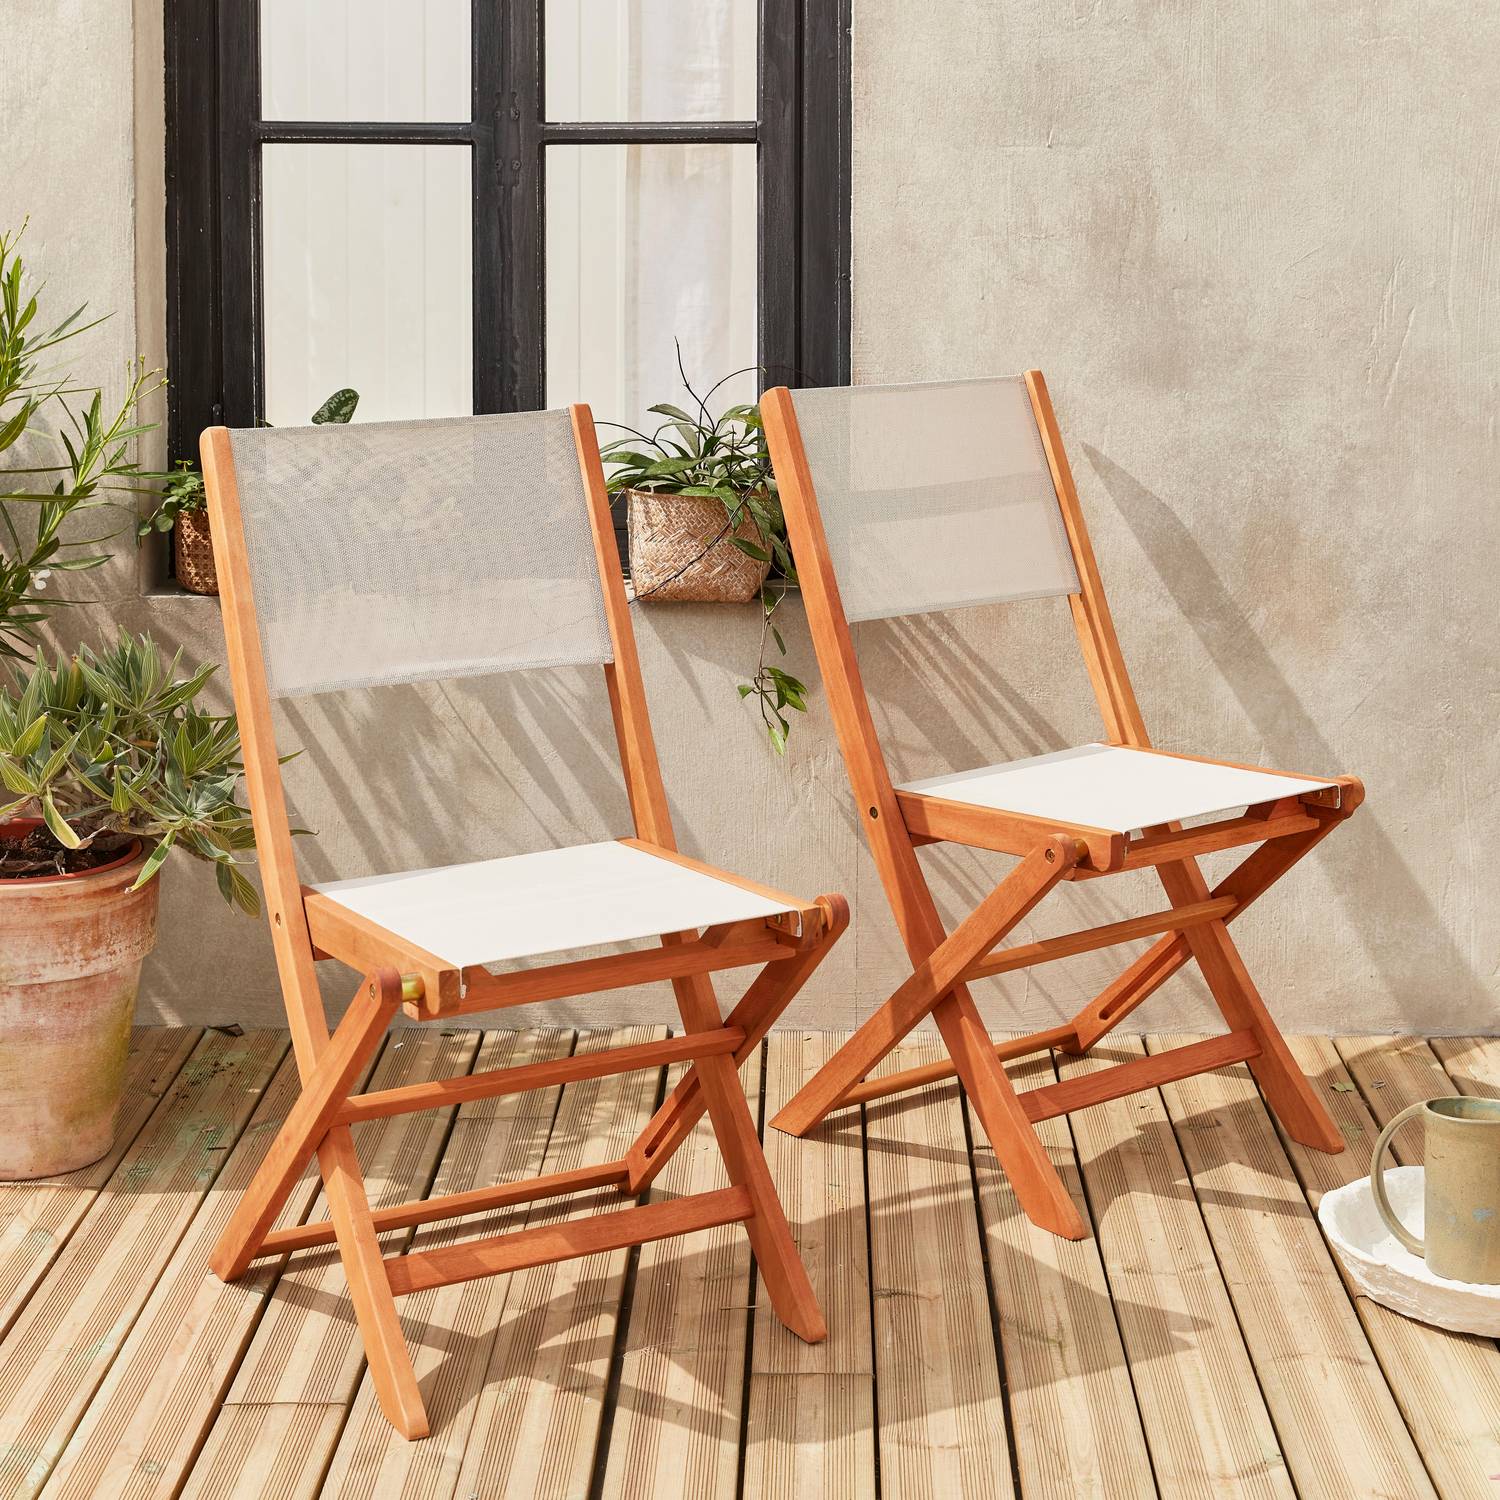 Sedie da giardino, in legno e textilene - modello: Almeria, colore: Bianco - 2 sedie pieghevoli in legno di eucalipto FSC oliato e textilene Photo1